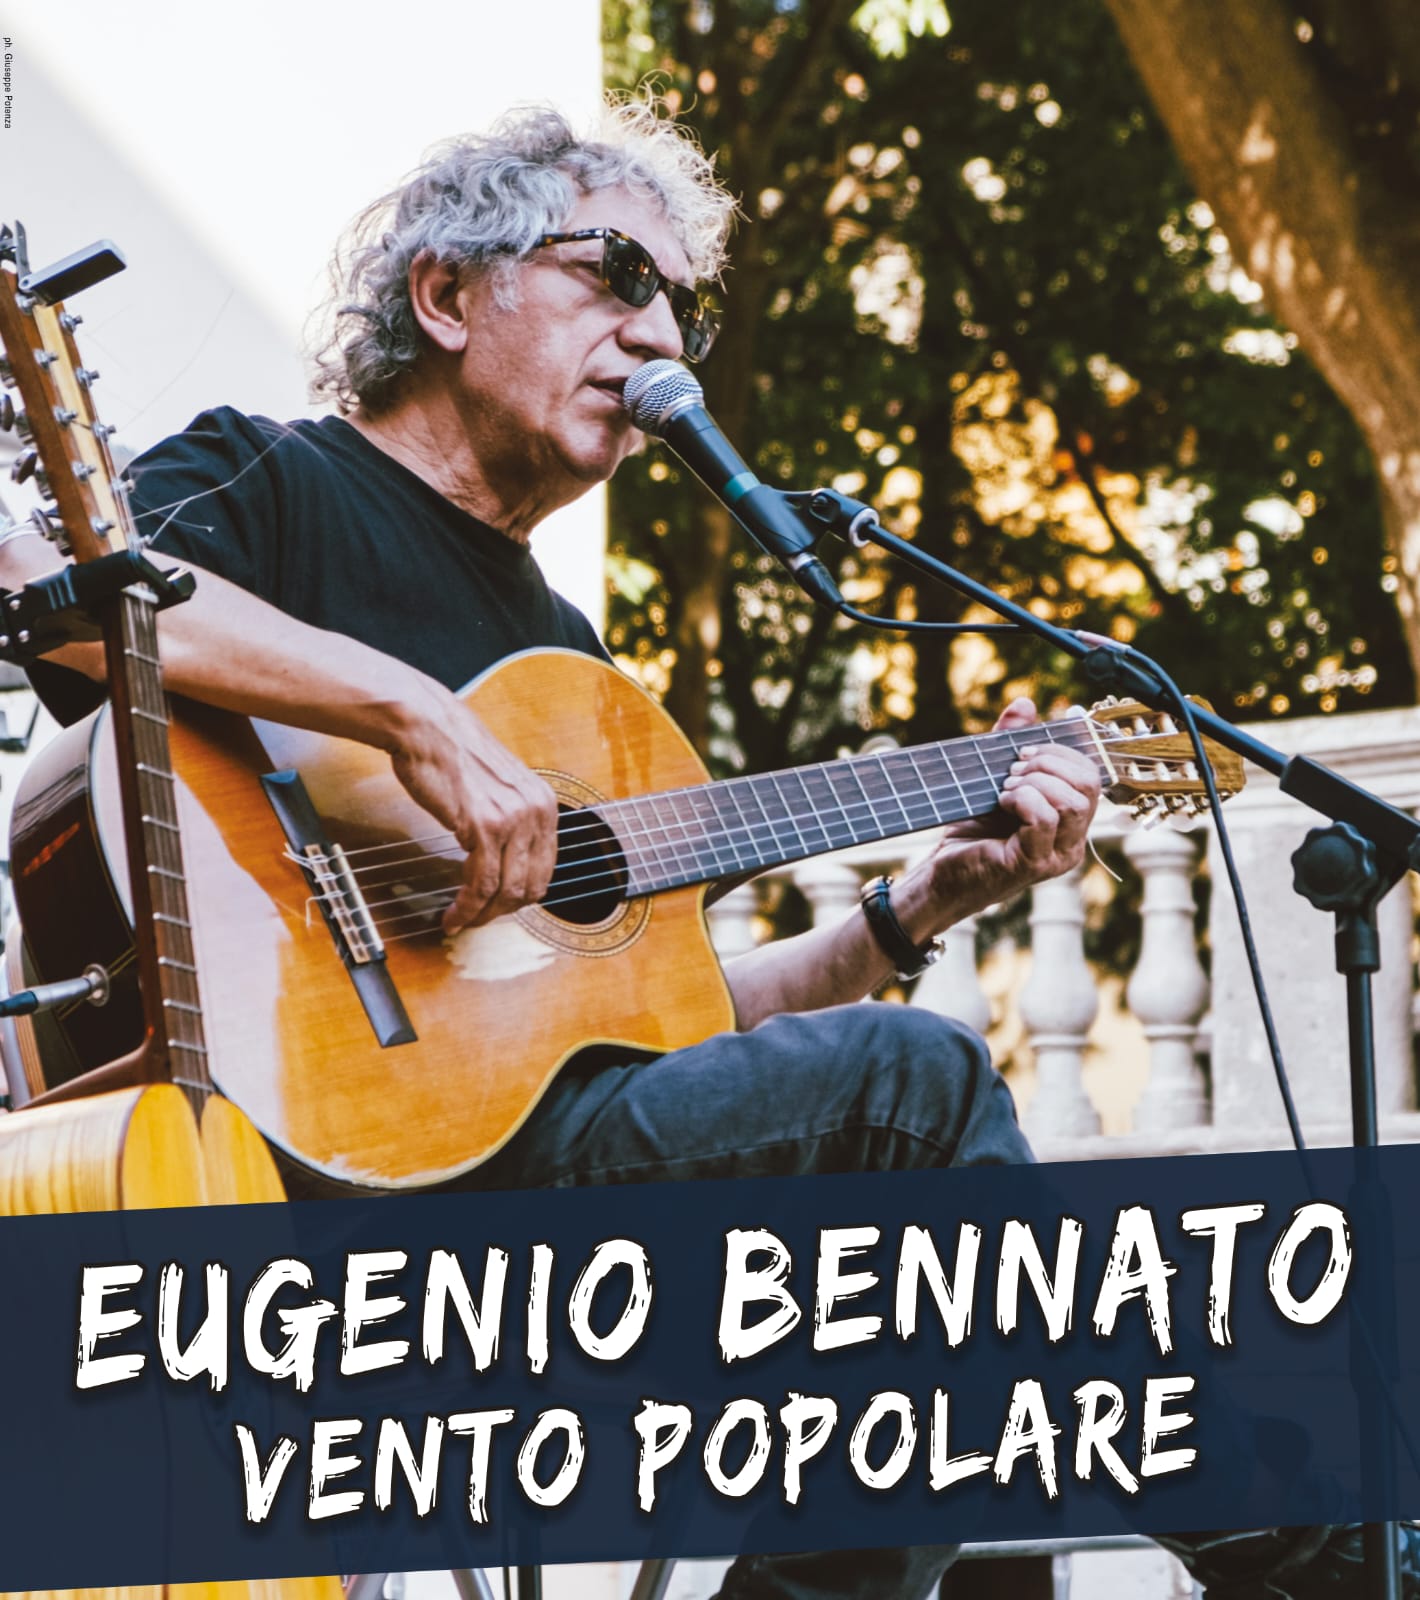 Domenica 3 settembre, Rotonda del Lungomare: Eugenio Bennato, Vento popolare